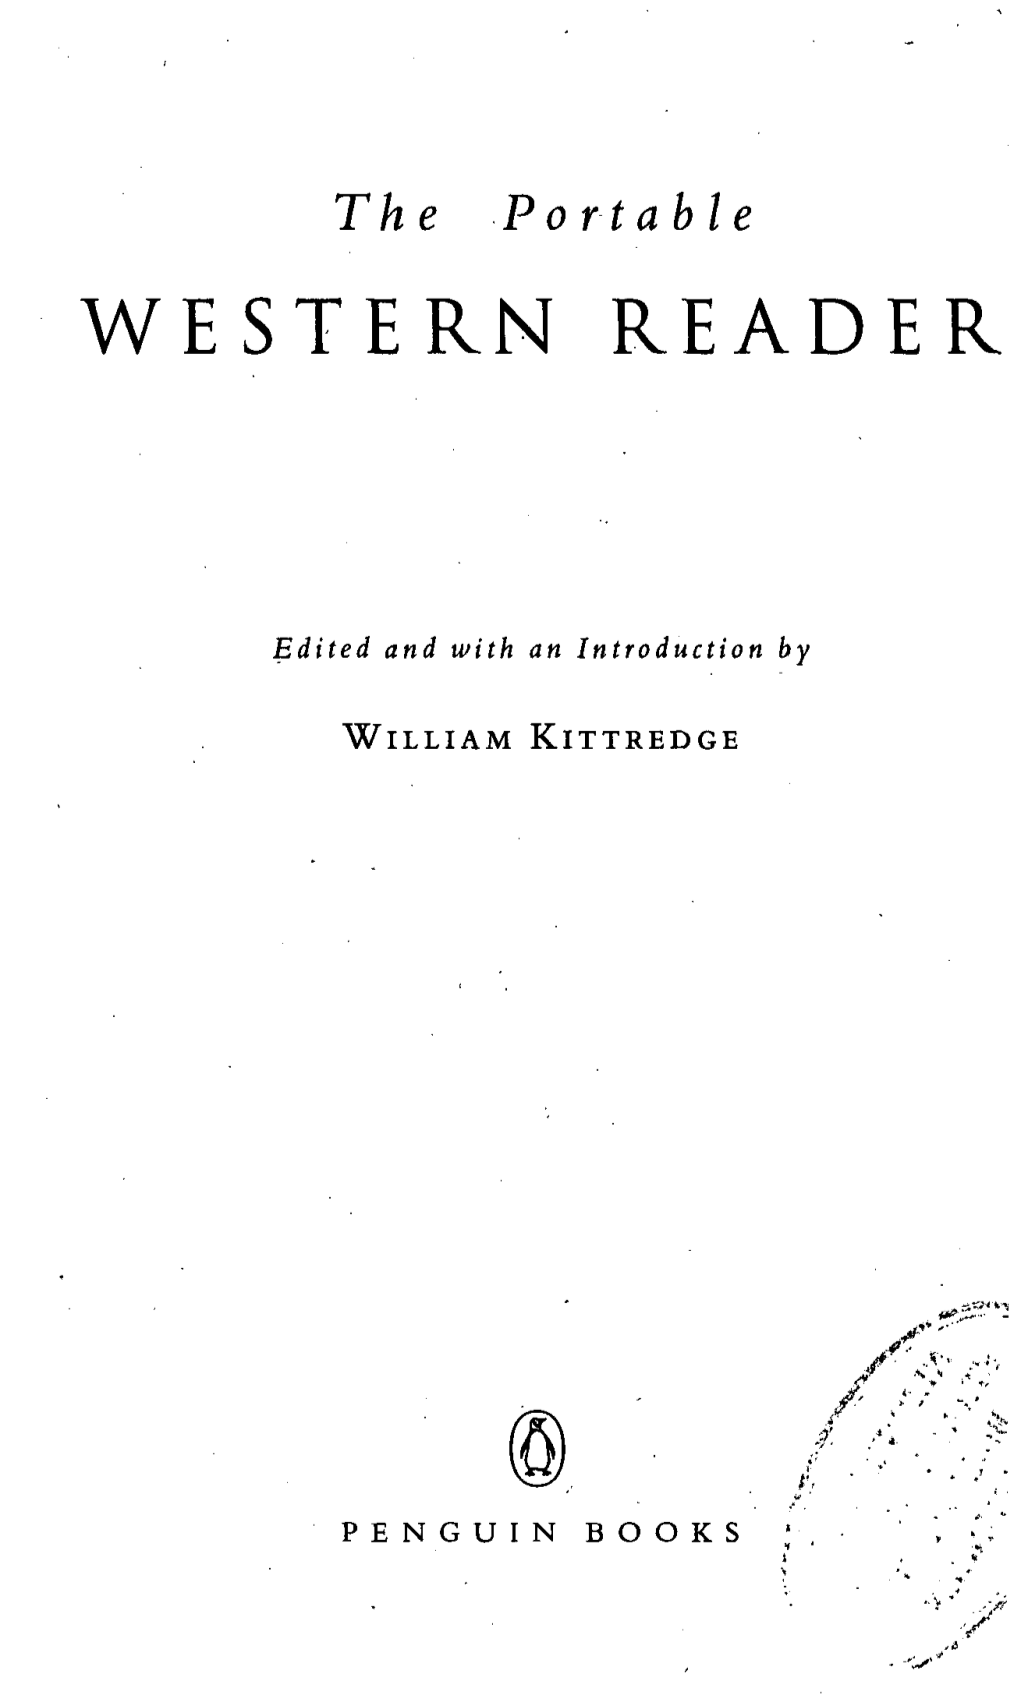 Western Reader